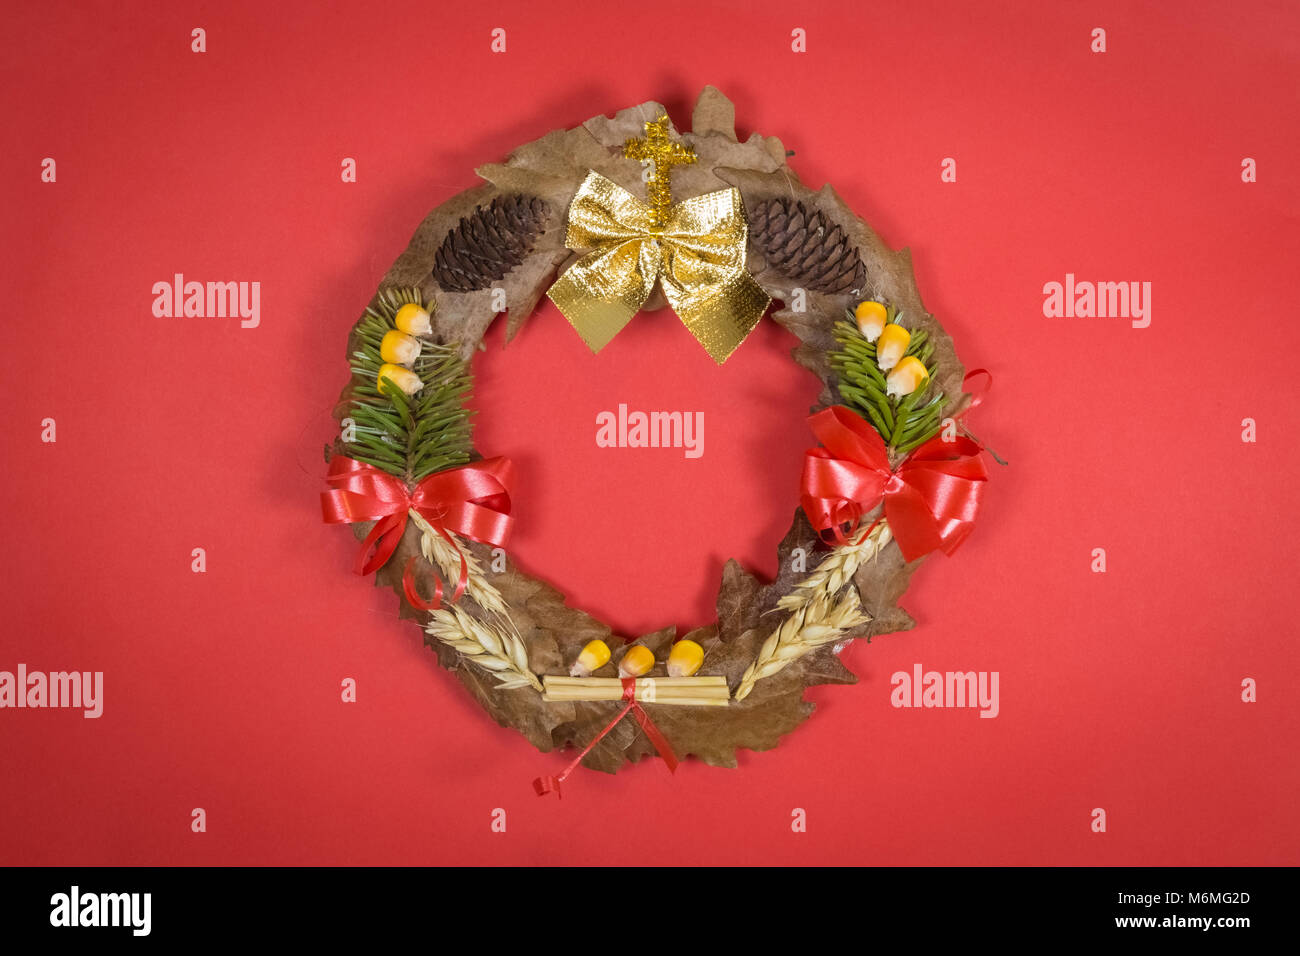 Orthodoxe Weihnachten Kranz aus Eichenlaub, kiefer Zweige, Weizen und Mais,  Rot, isoliert Stockfotografie - Alamy